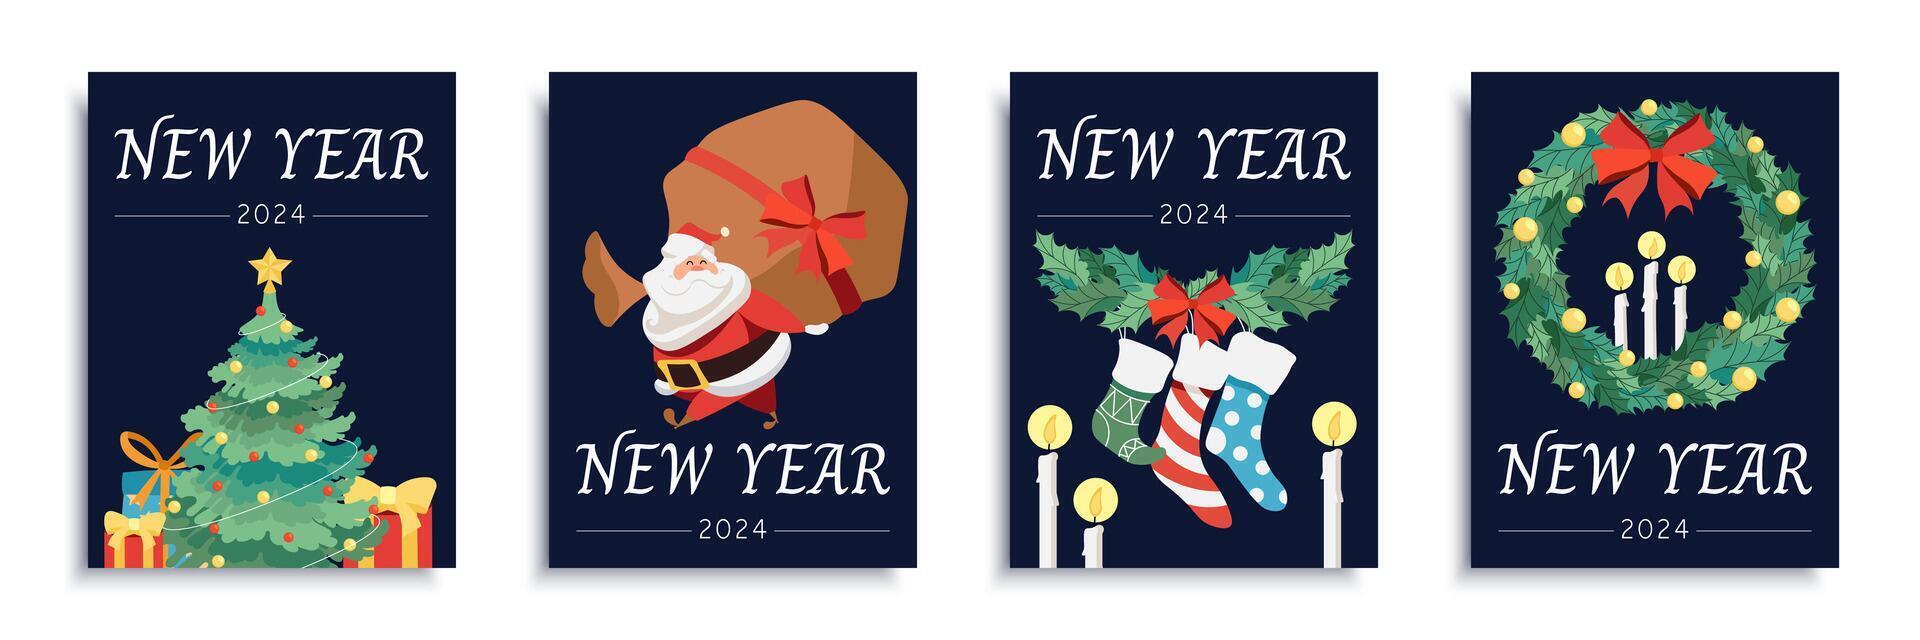 Neu Jahr 2024 Startseite Broschüre einstellen im eben Design. Poster Vorlagen mit Weihnachten Baum und Geschenke, Santa claus mit groß Tasche, Socken und Stechpalme Kranz, Kerzen, andere Urlaub Dekor. Vektor Illustration.